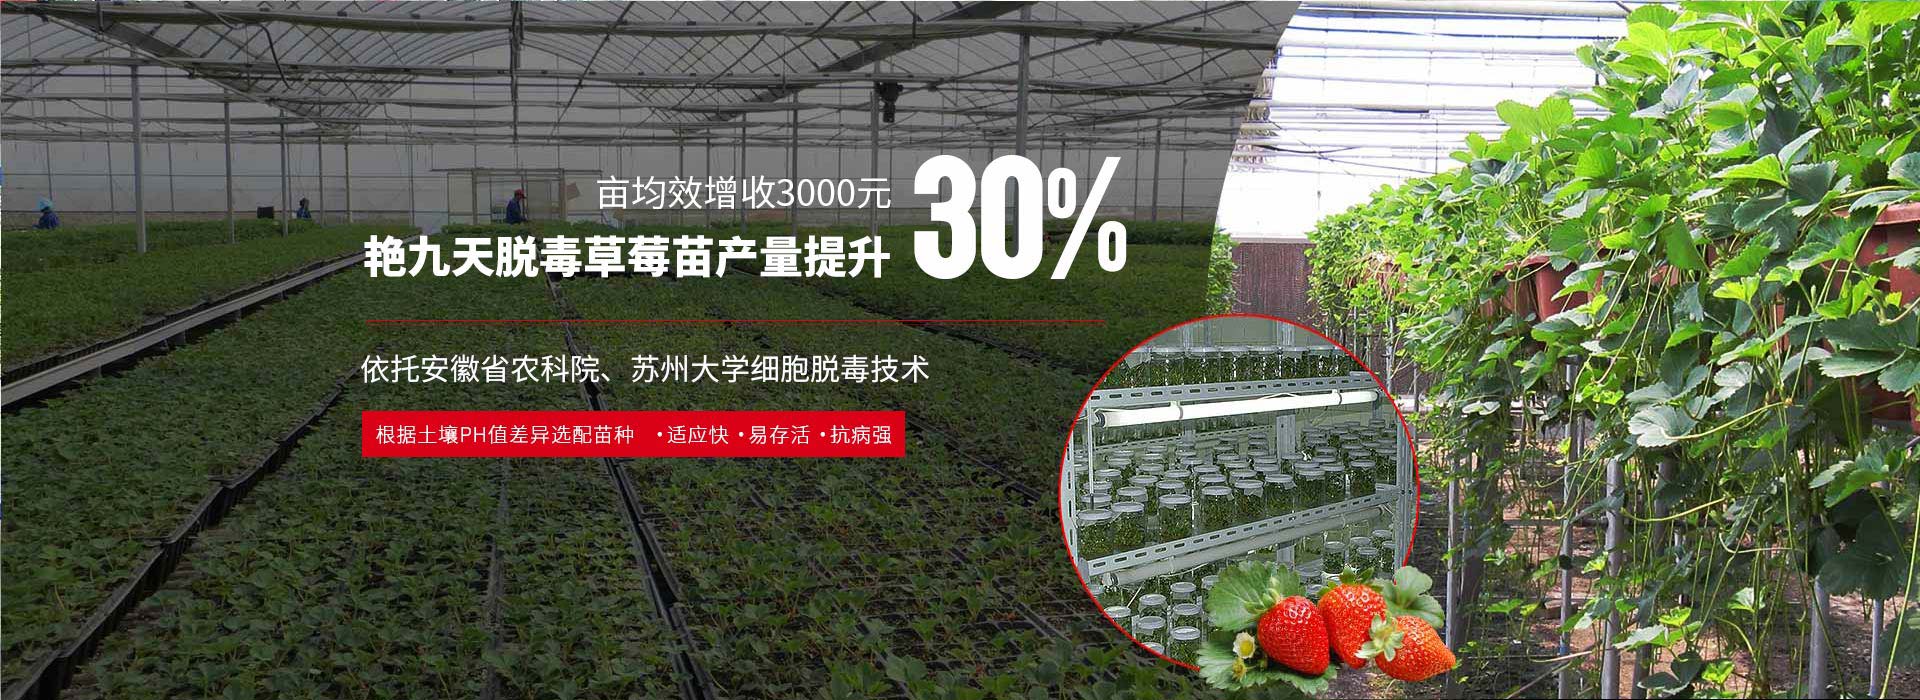 艷九天脫毒草莓苗產量提升達30%